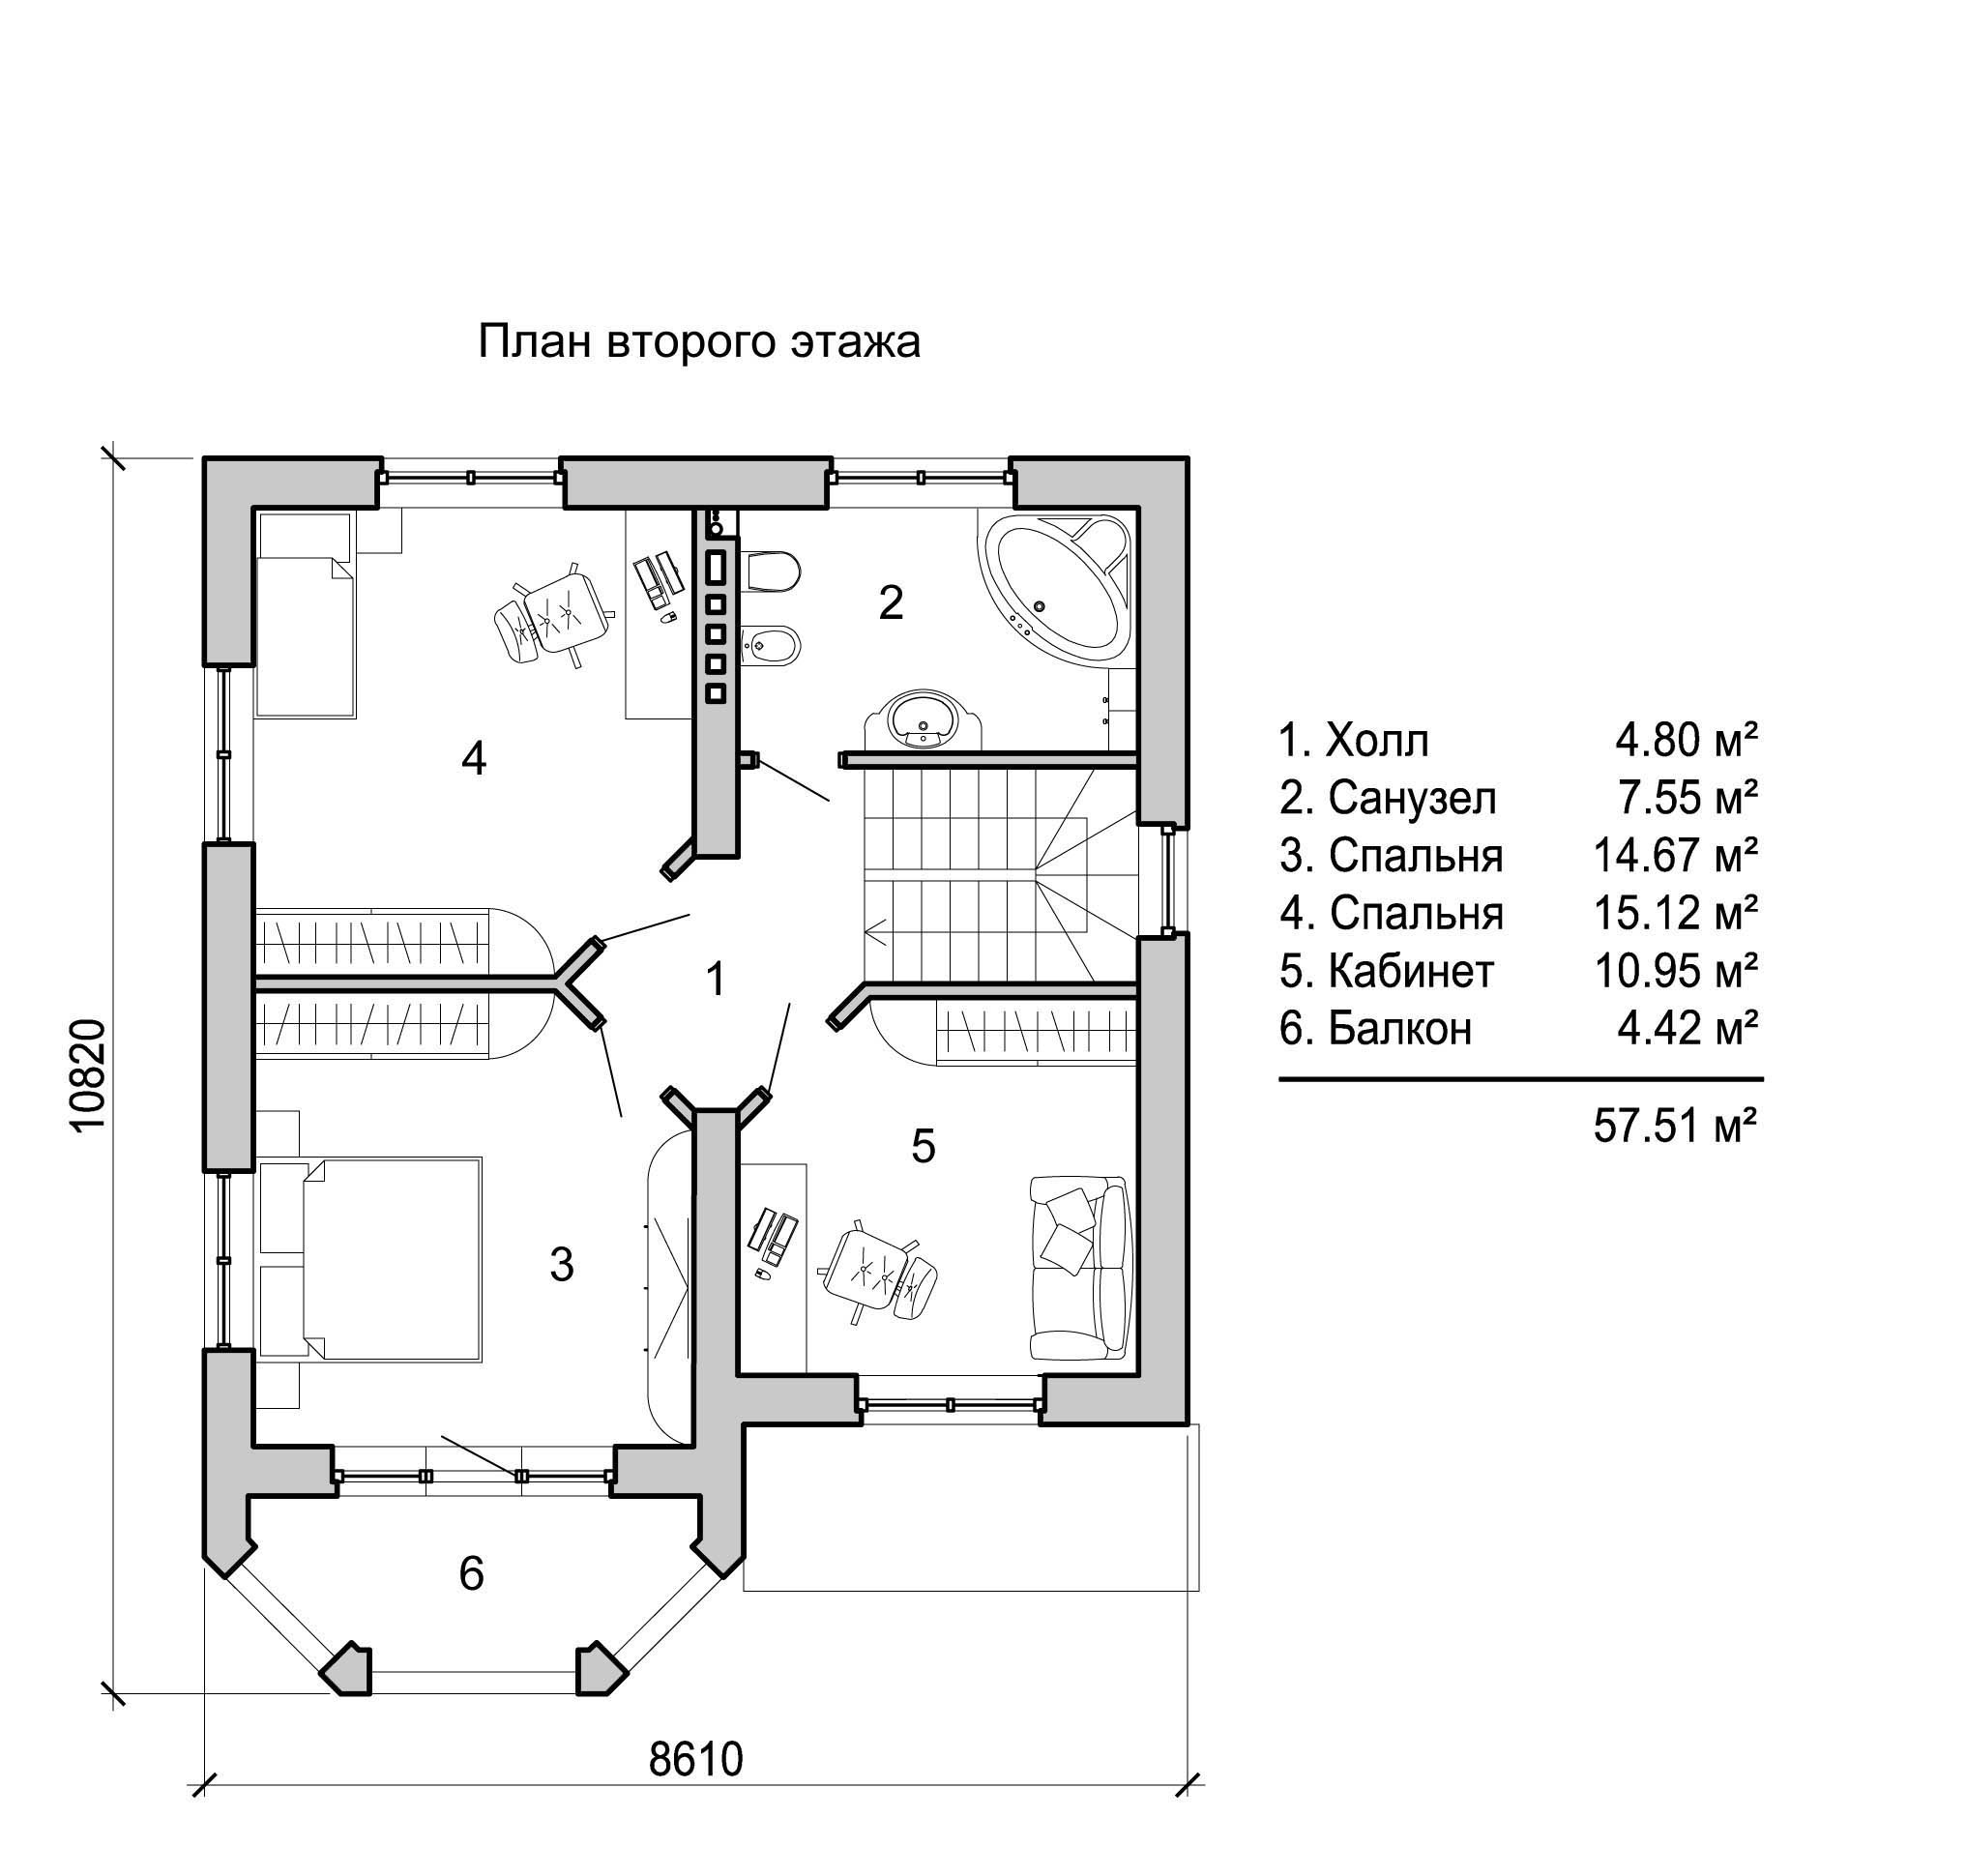 Схема домов 2 этажа. Планировка коттеджа. Планировка второго этажа. Планировка второго этажа в доме. План второго этажа двухэтажного дома.